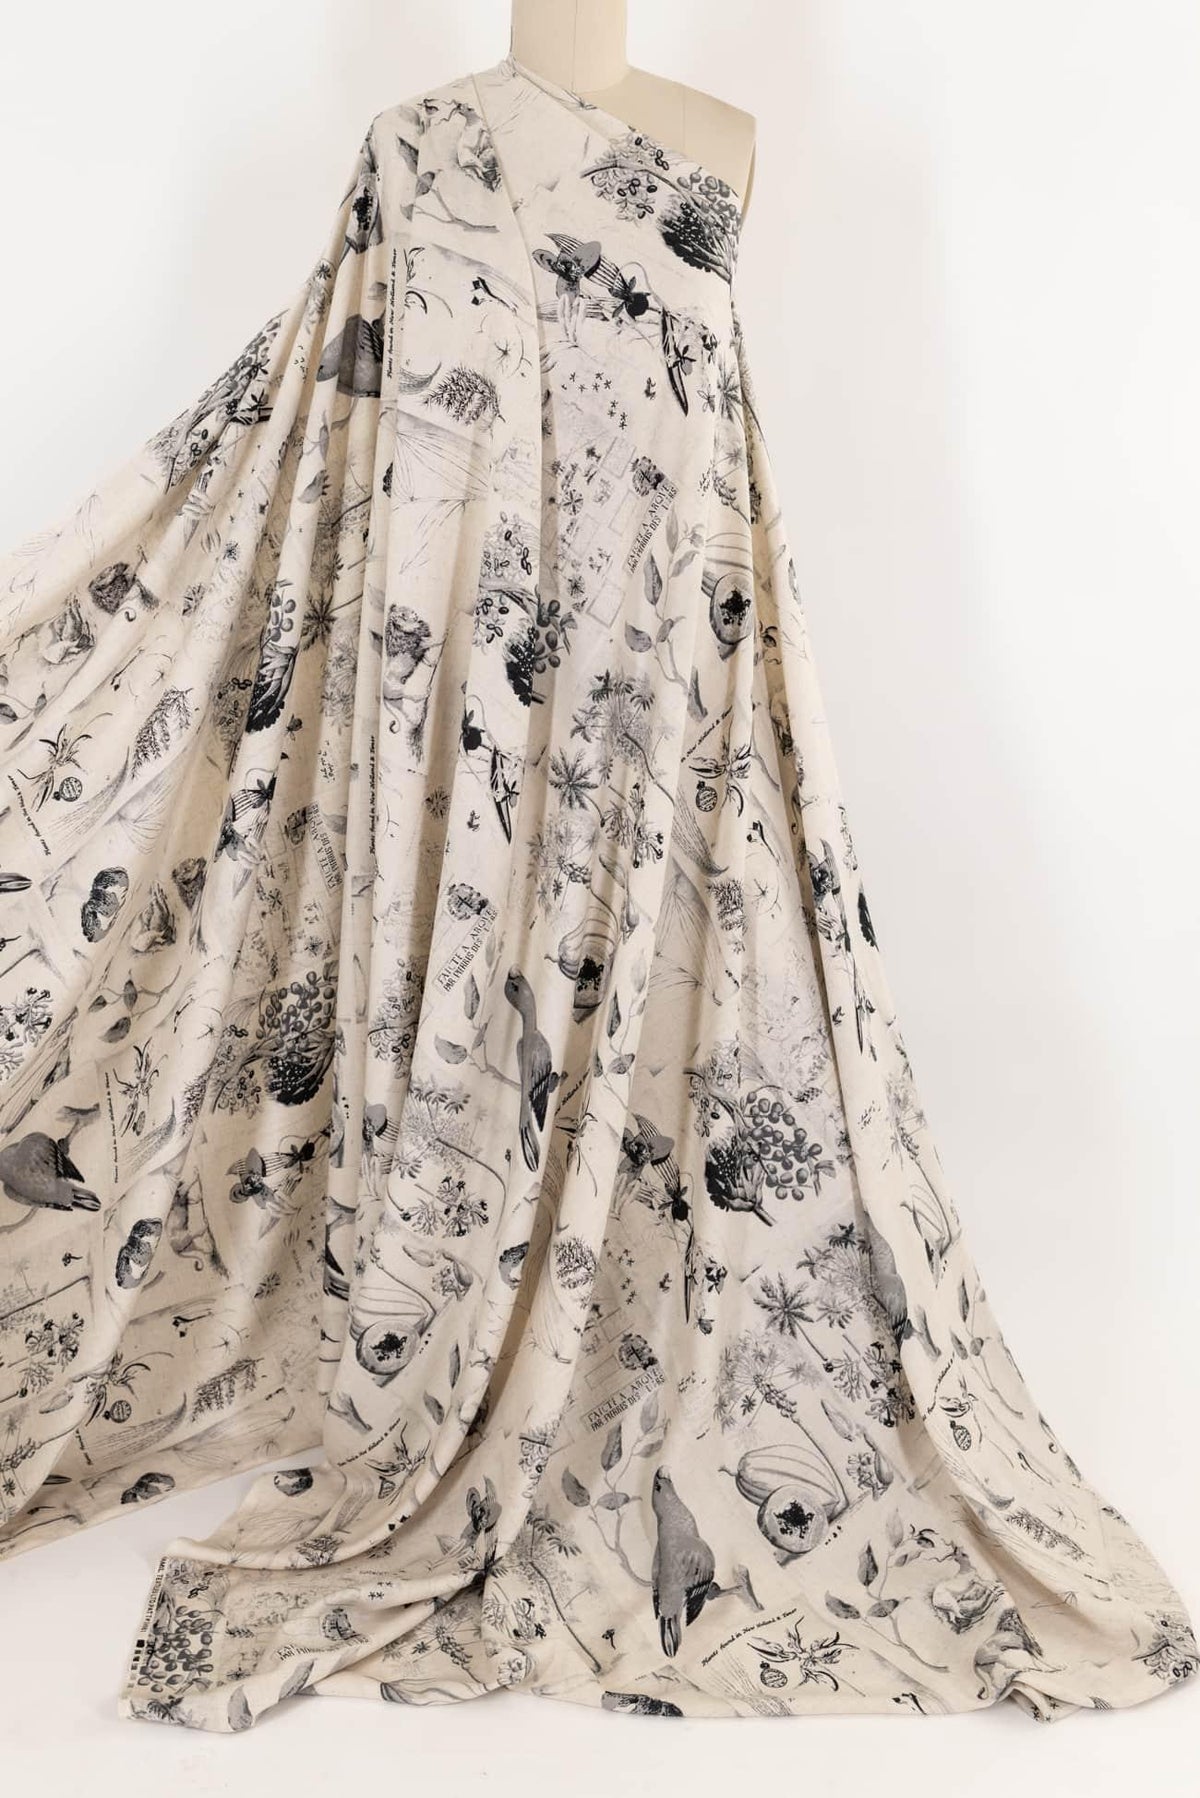 Gloria's Garden Rayon/Linen Woven - Marcy Tilton Fabrics